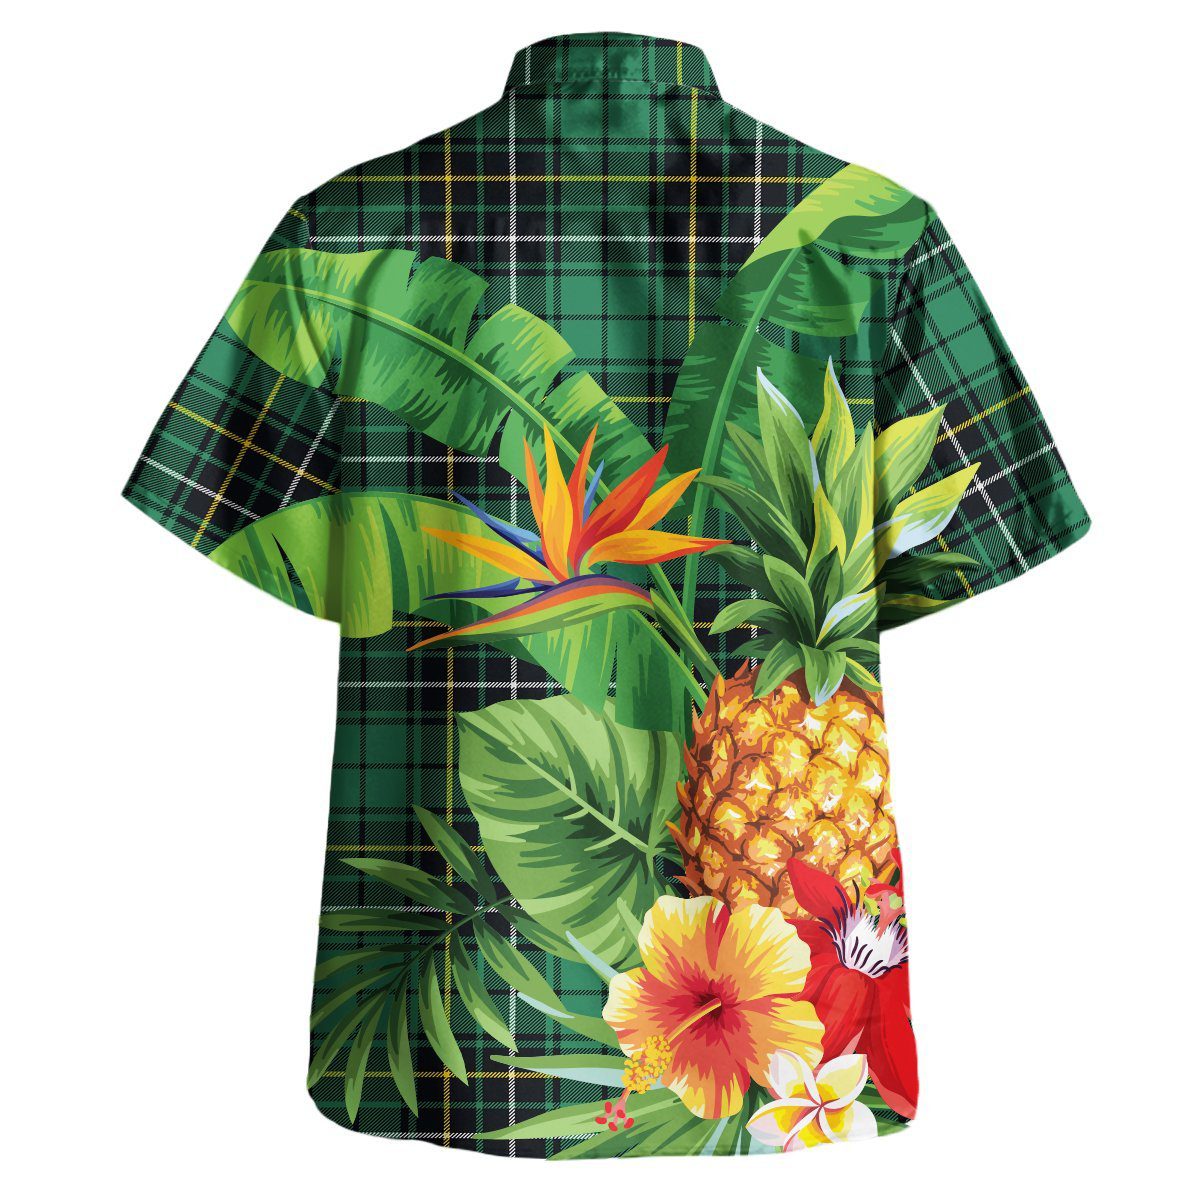 MacAlpine Ancient Tartan Aloha Shirt version 2